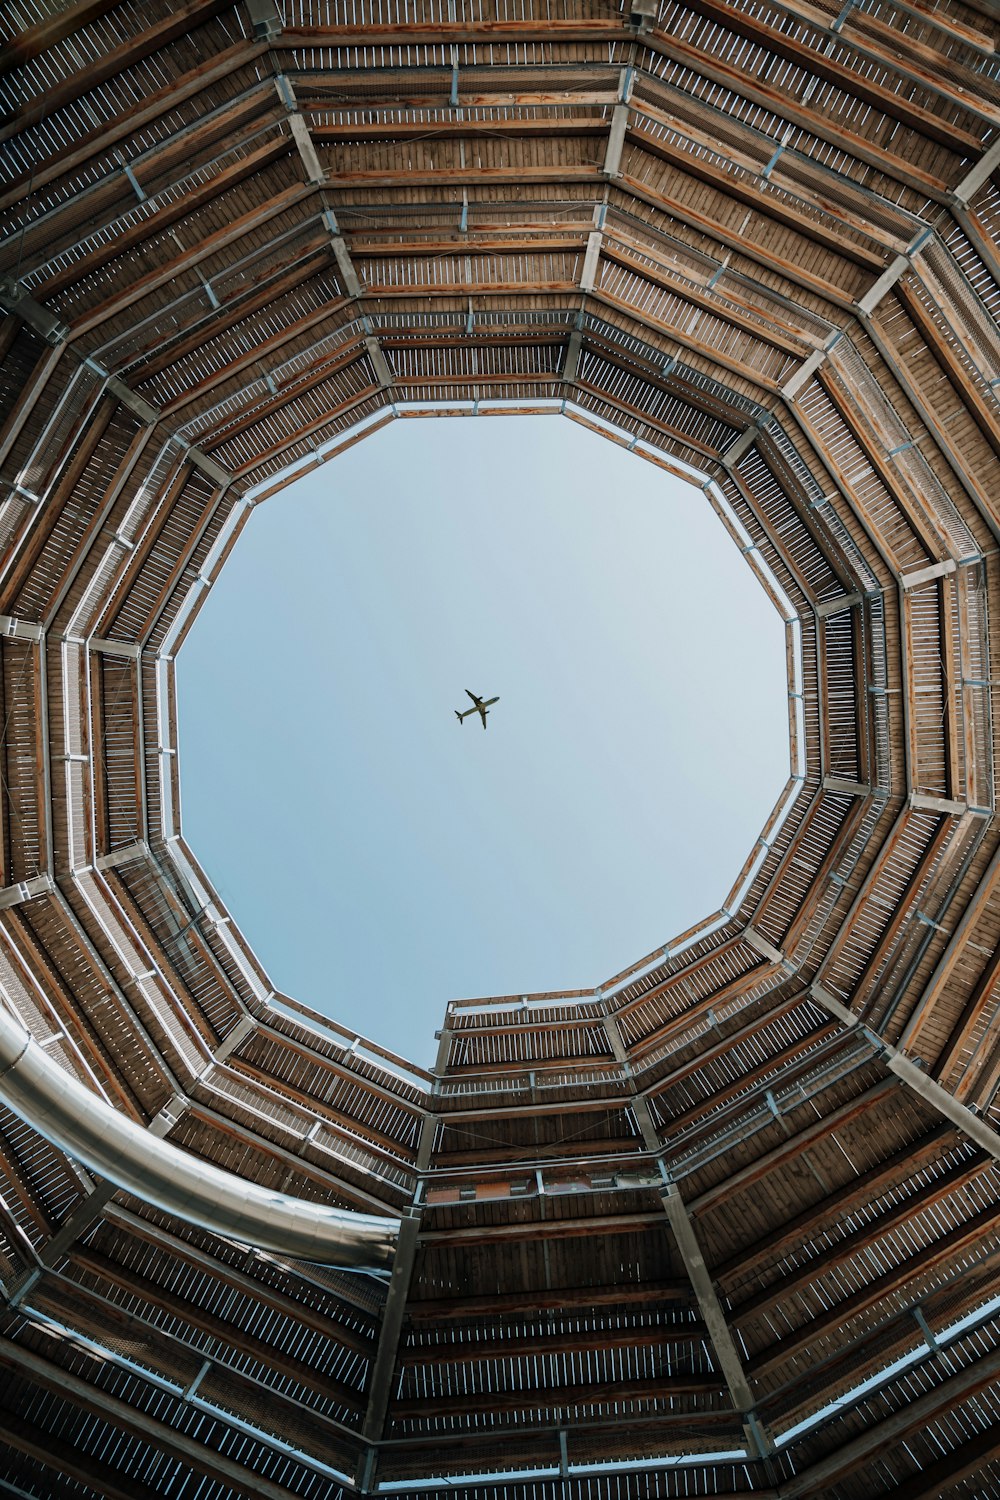 Un avión volando en el cielo a través de una estructura de madera